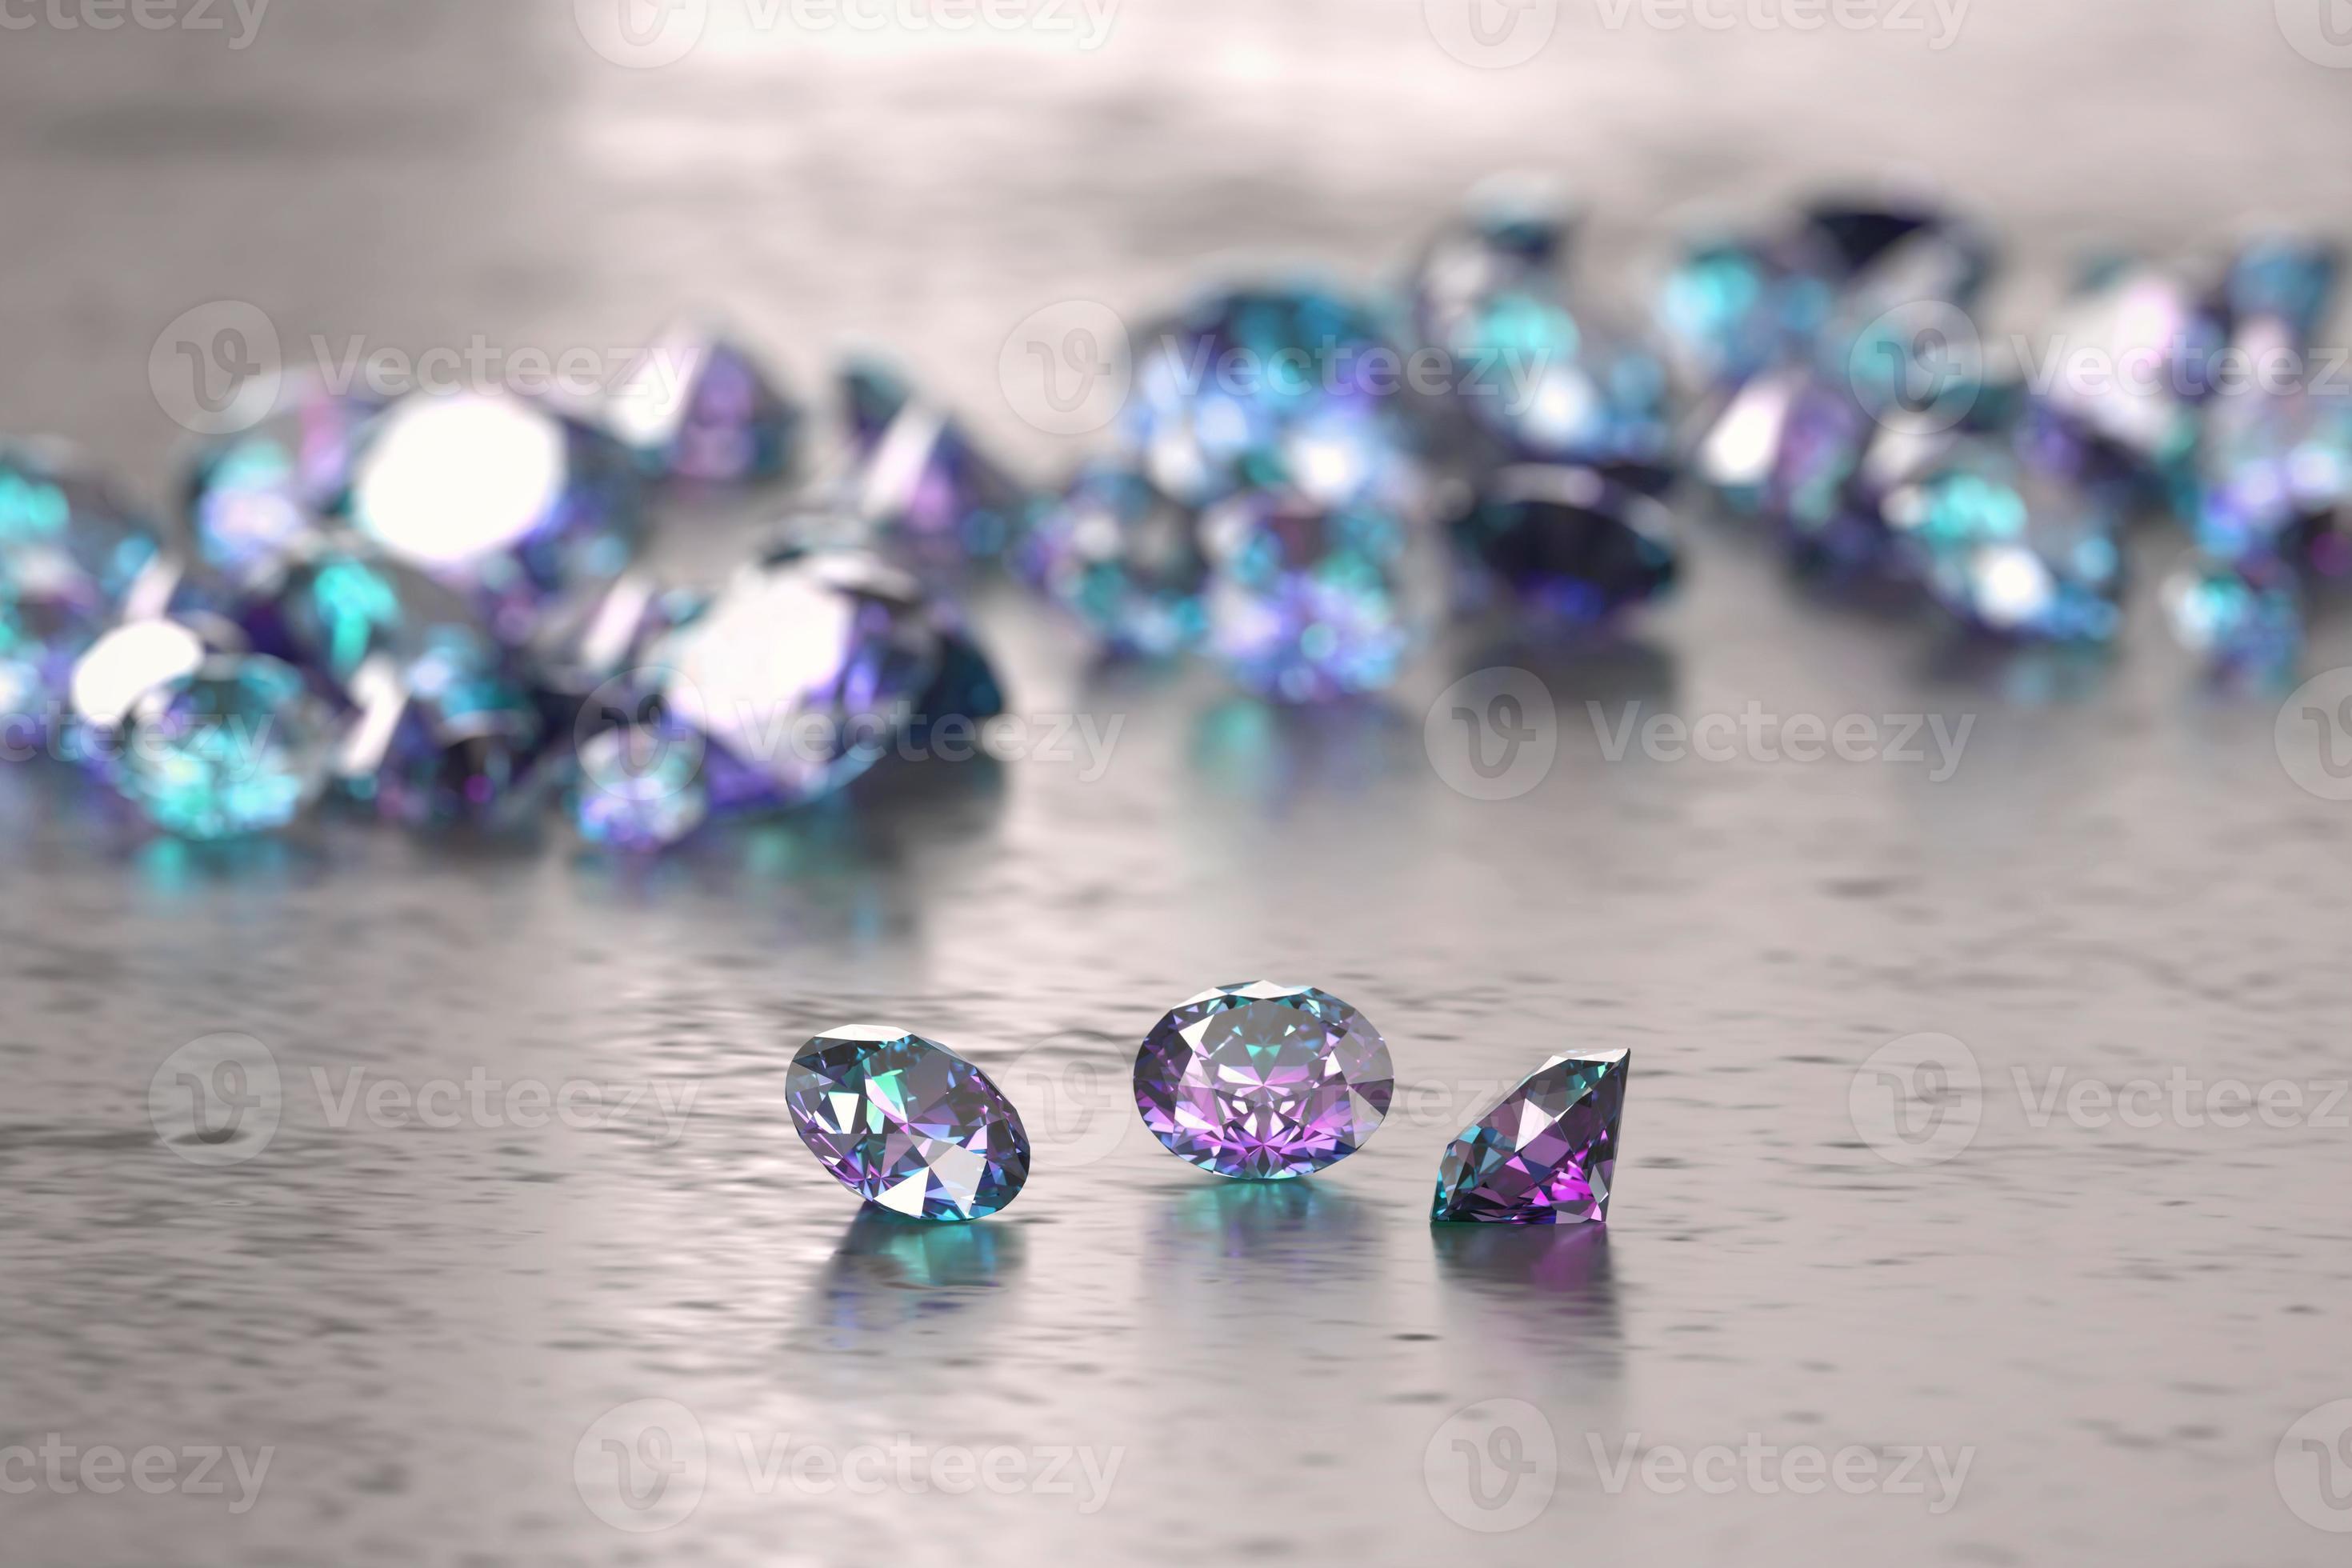 Bạn muốn đắm chìm trong vẻ đẹp tuyệt đỉnh của những viên kim cương màu xanh và tím? Hãy cùng chiêm ngưỡng hình ảnh và ngỡ ngàng trước sự lấp lánh, mềm mại của những viên kim cương tuyệt đẹp này.